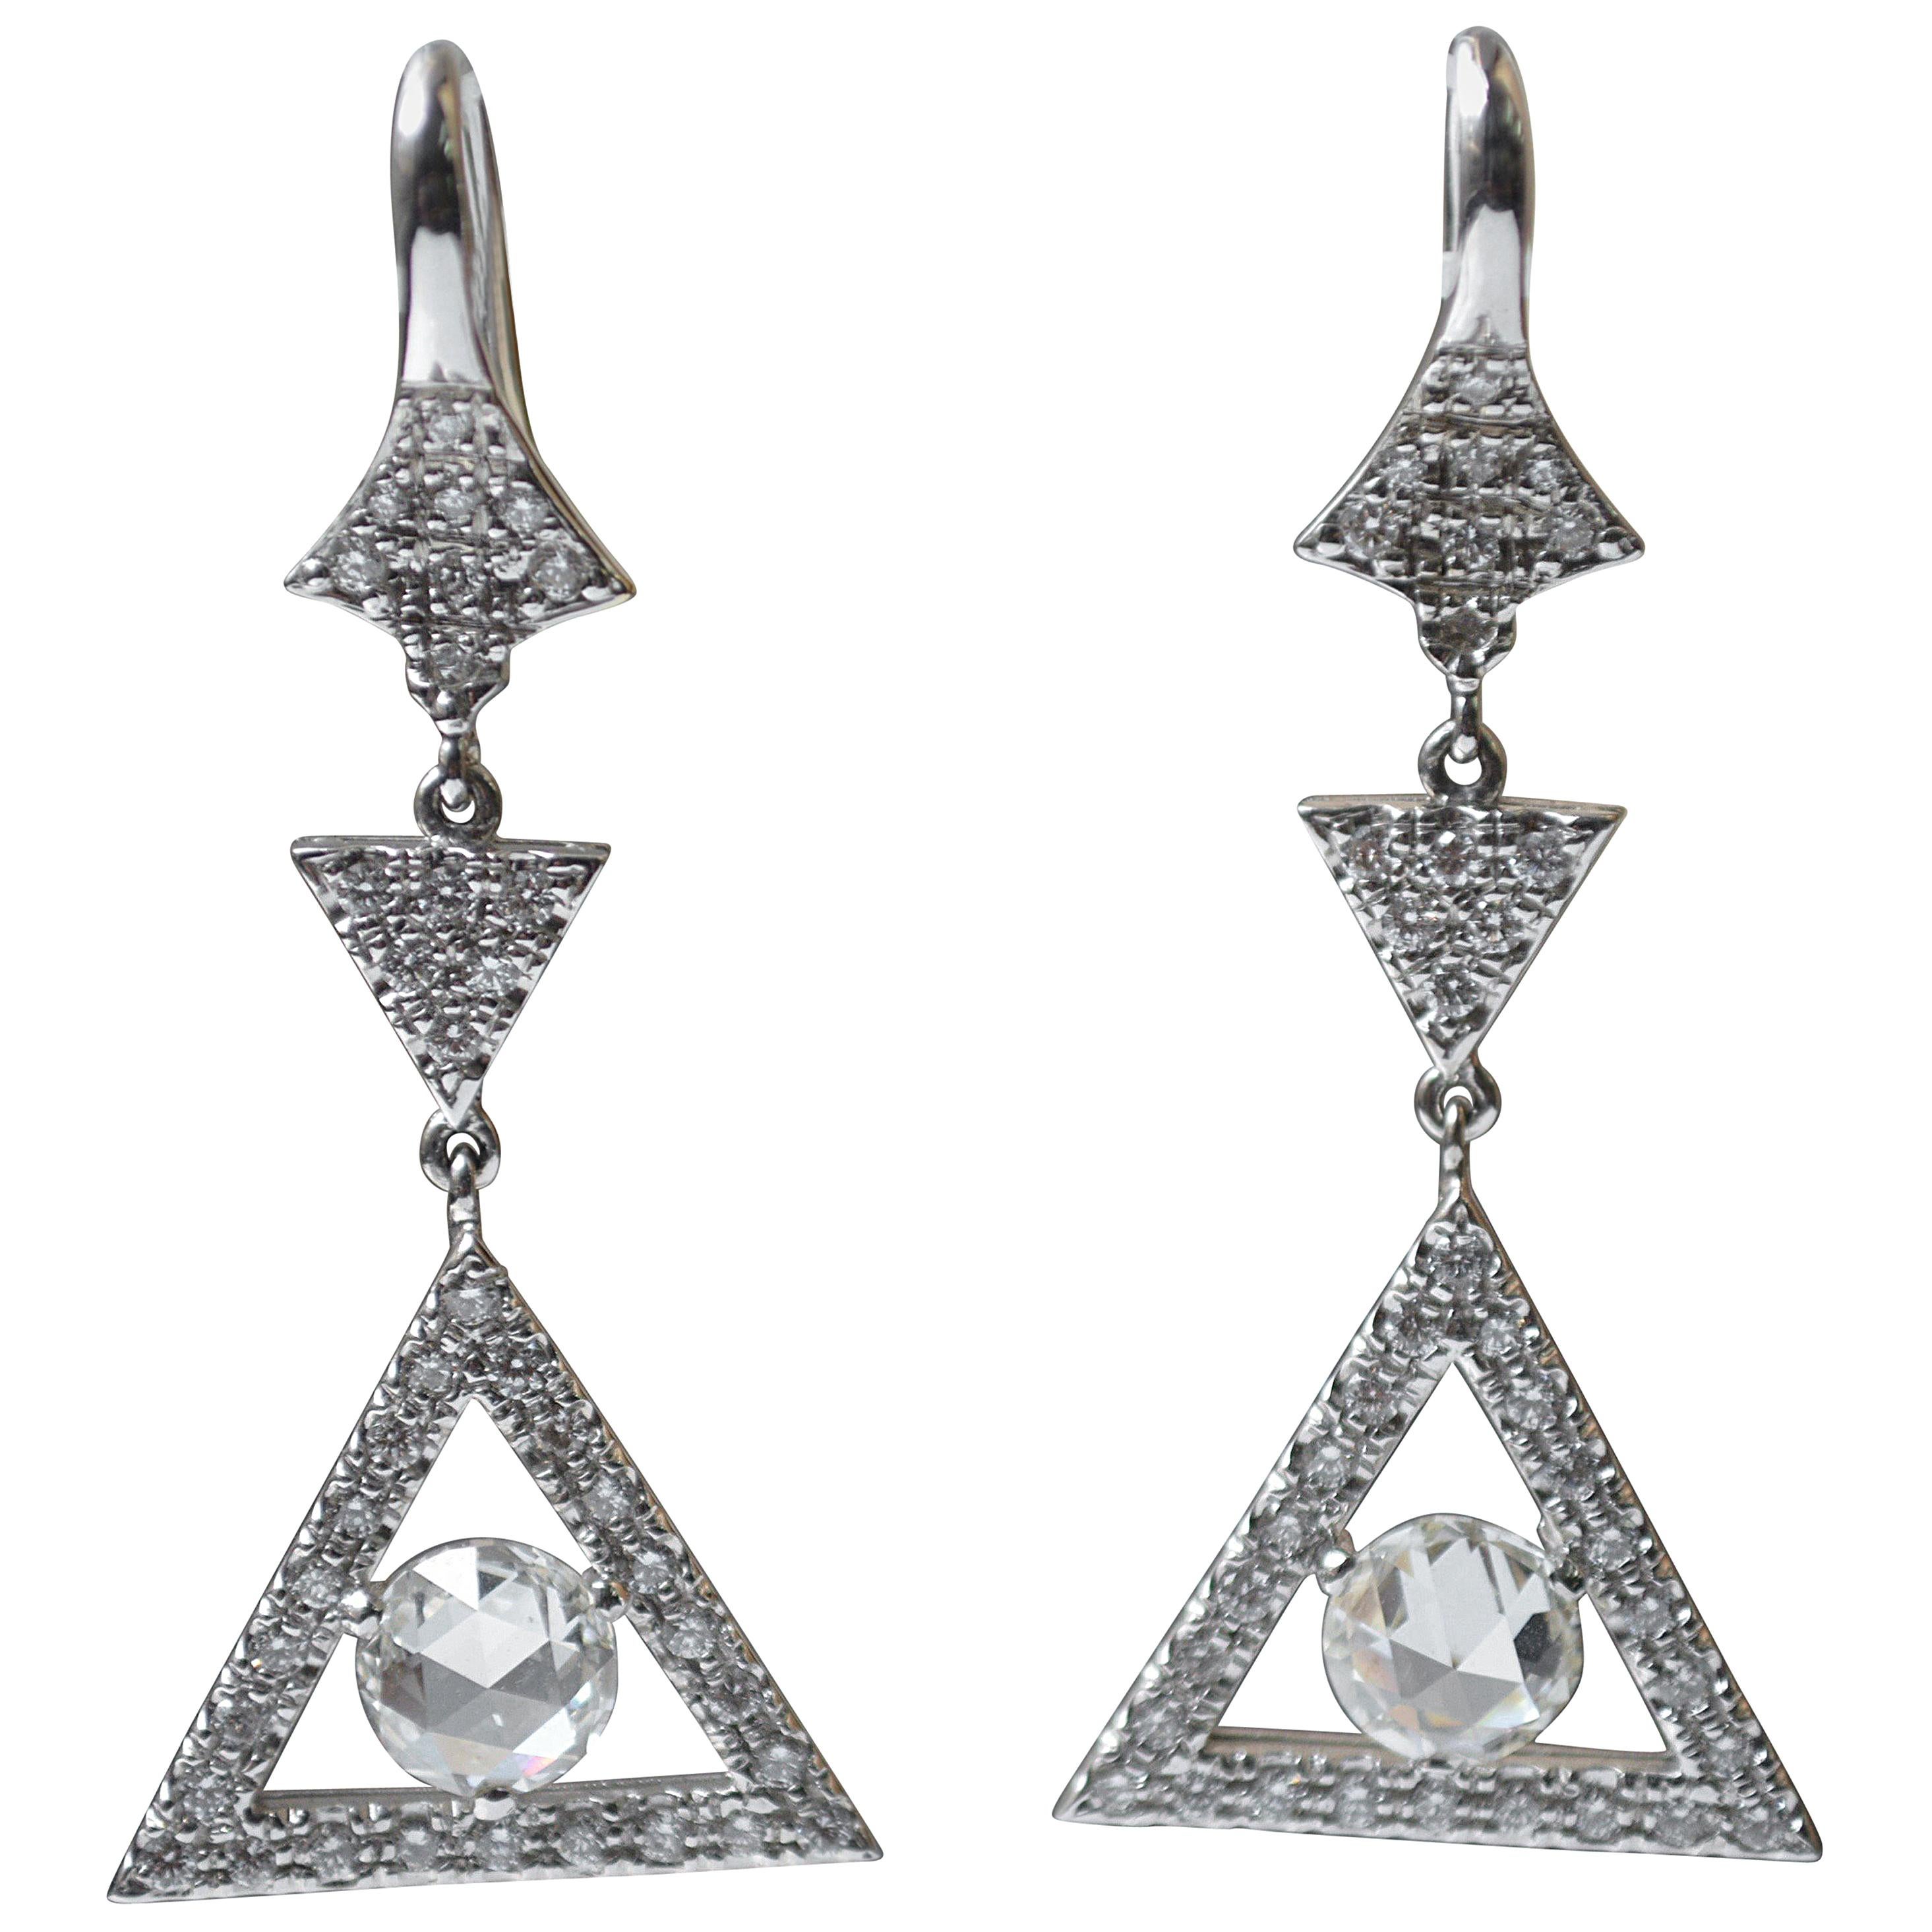 2.30 Carat Rose Cut Diamond And Circular Cut Diamond Dangle Earrings In 18 K